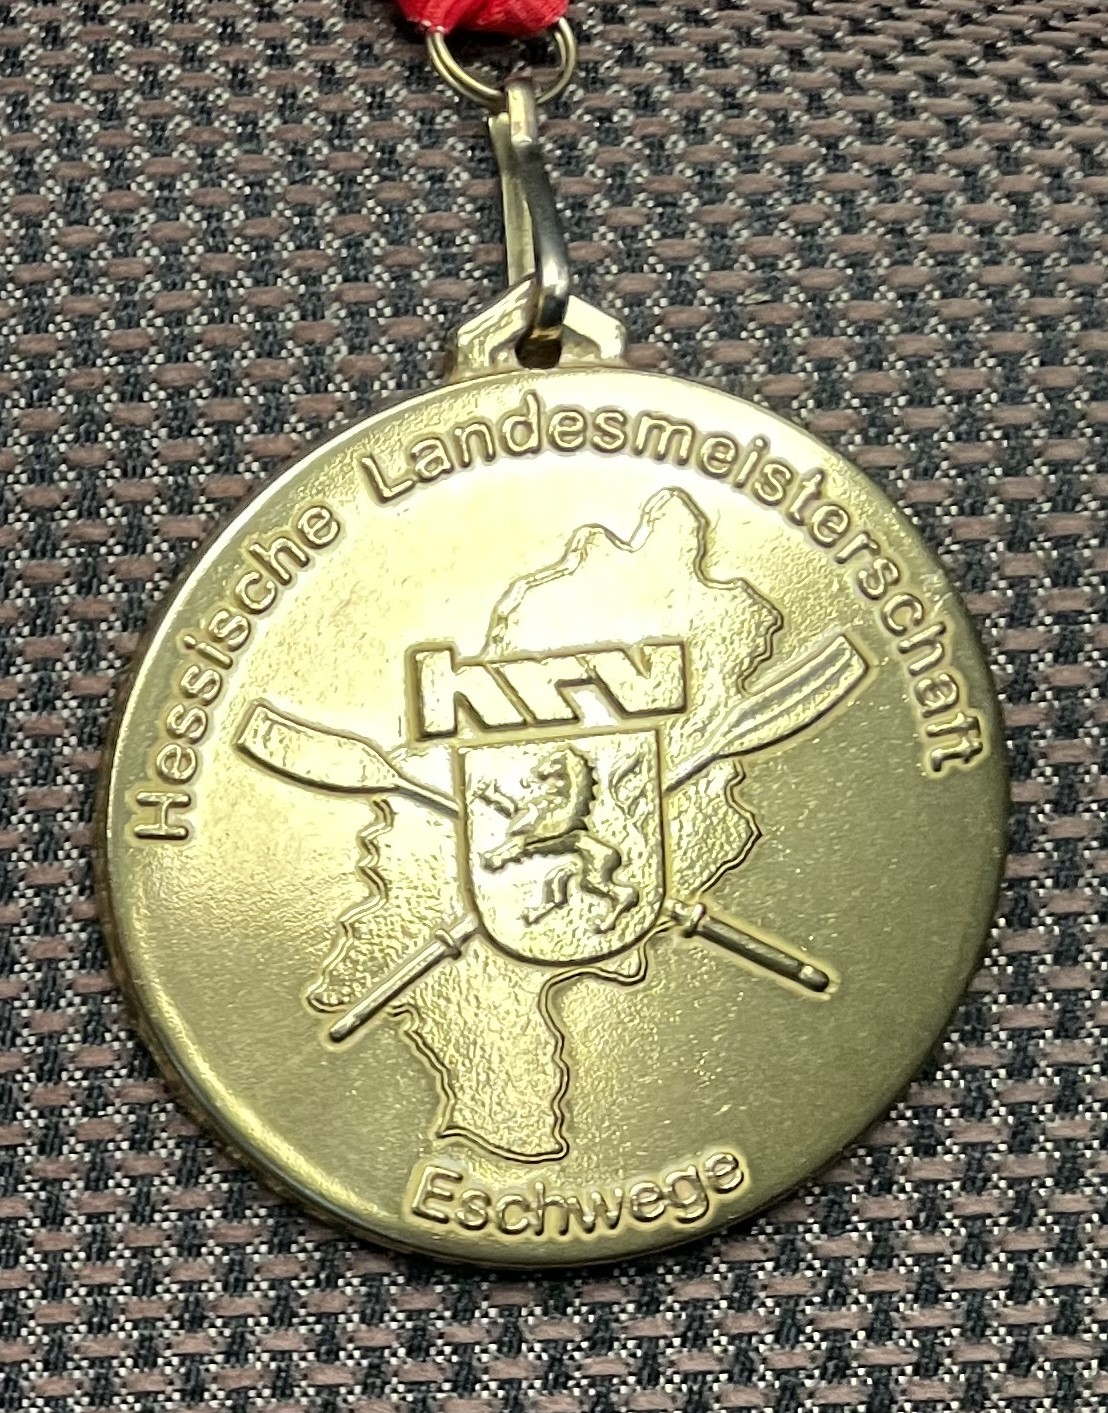 Gold, Silber, Bronze für unsere Ruderer bei den hessischen Meisterschaften